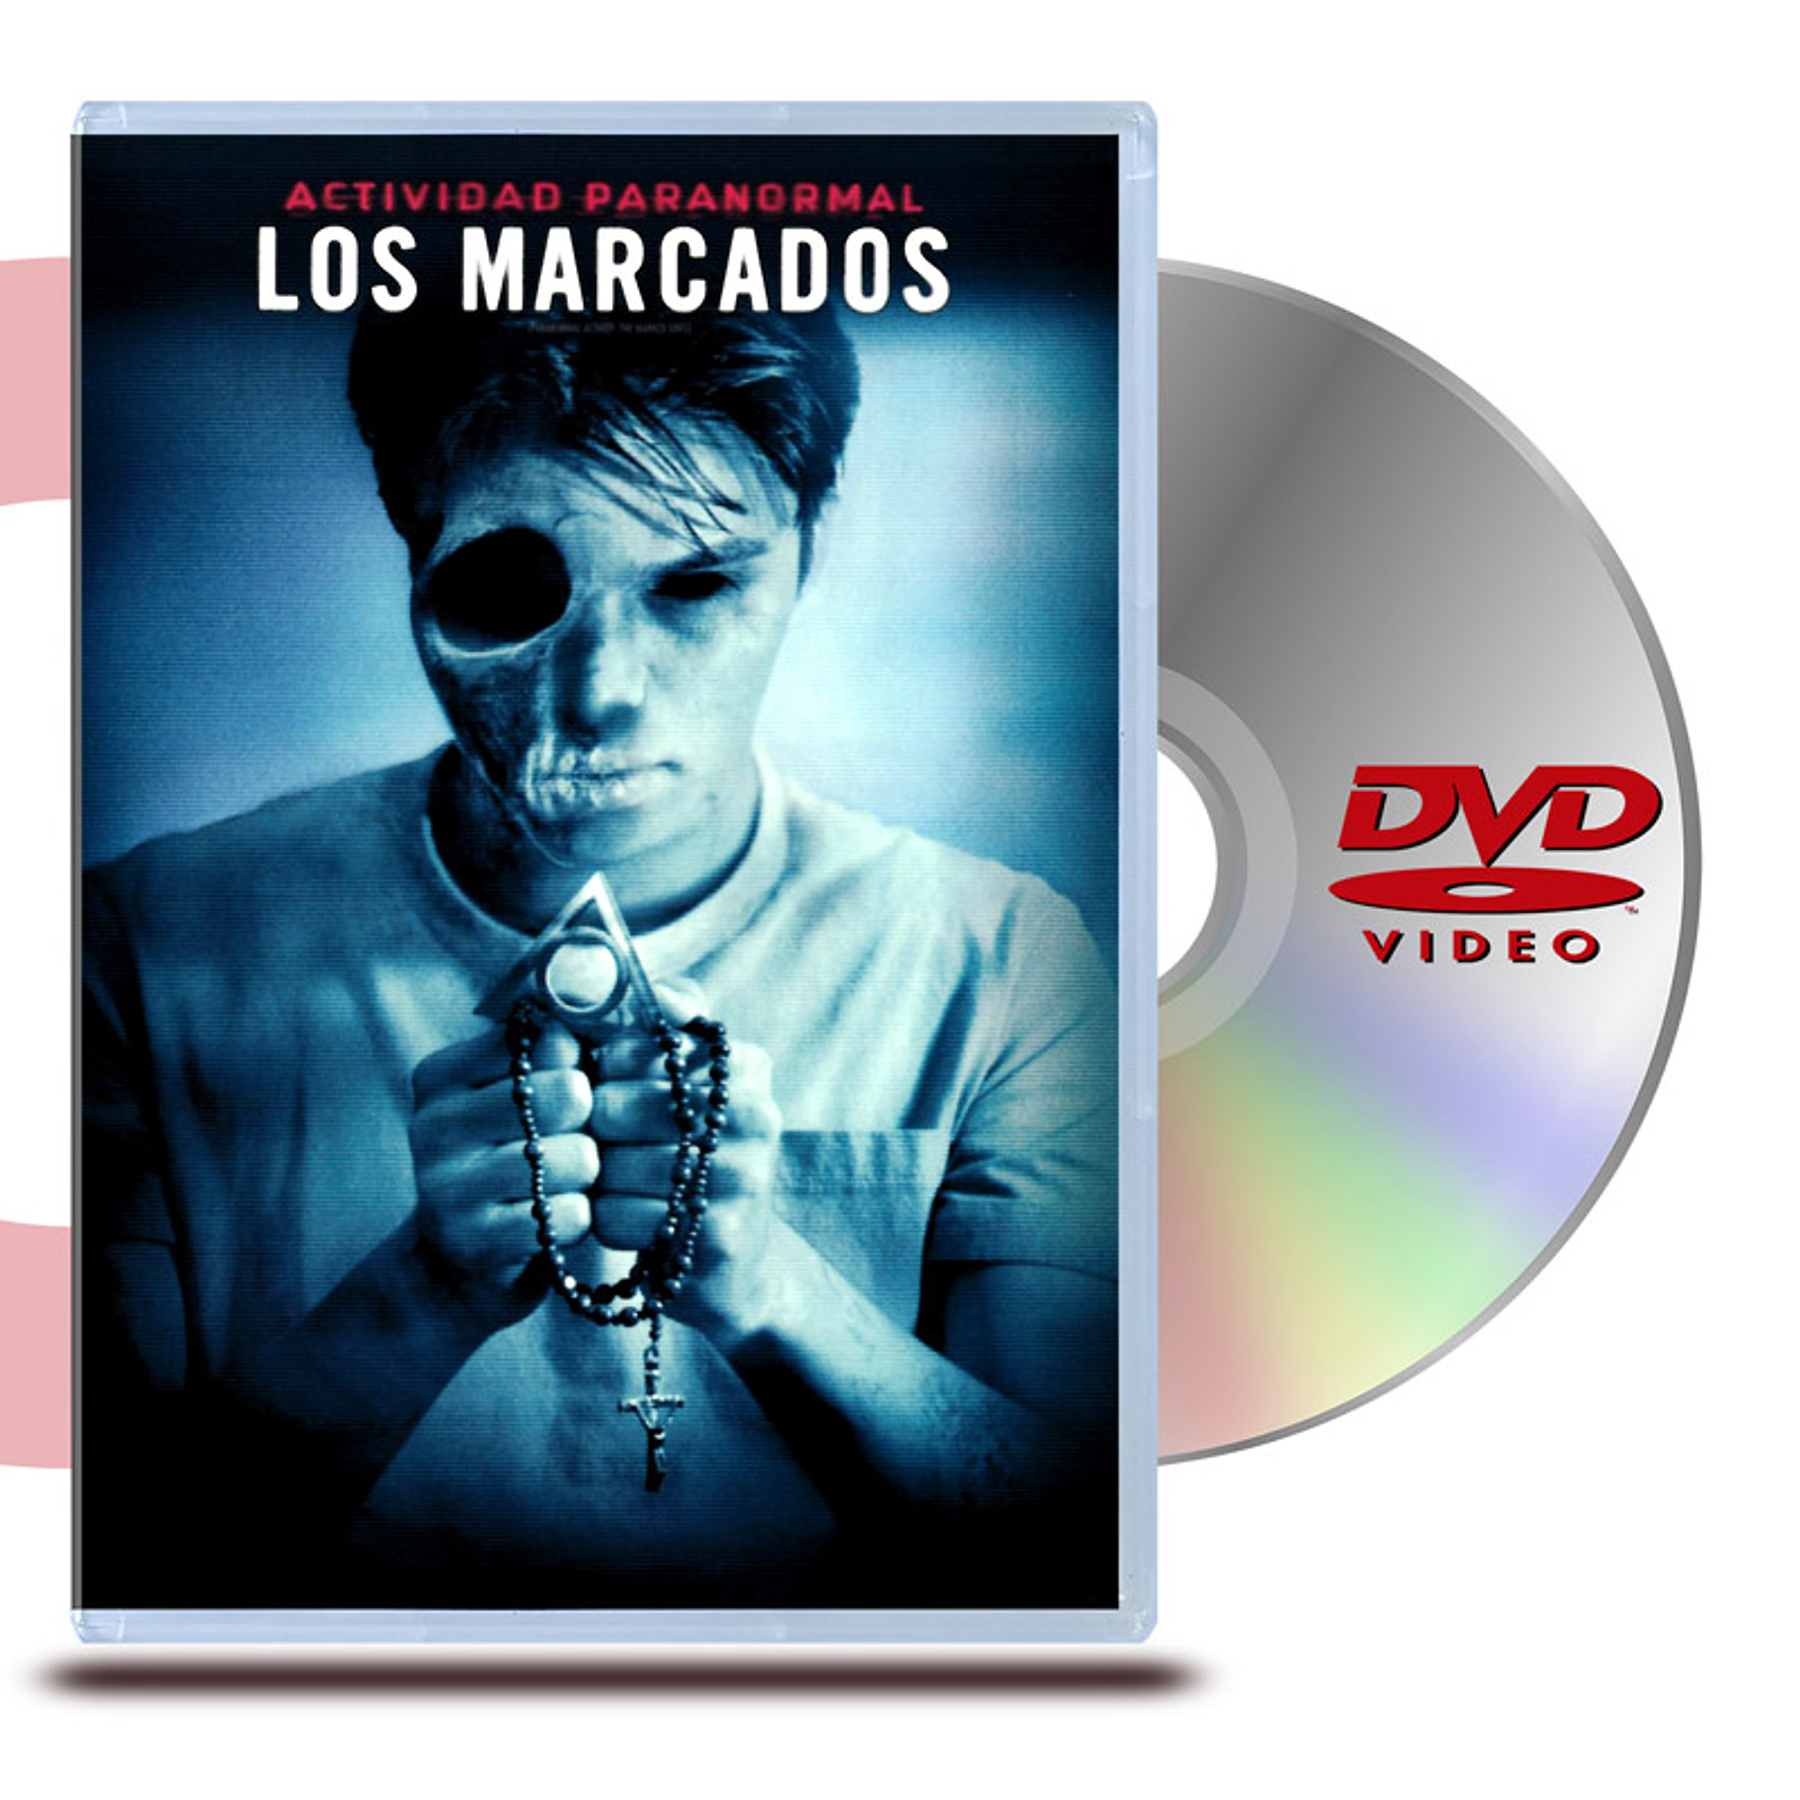 DVD ACTIVIDAD PARANORMAL: LOS MARCADOS